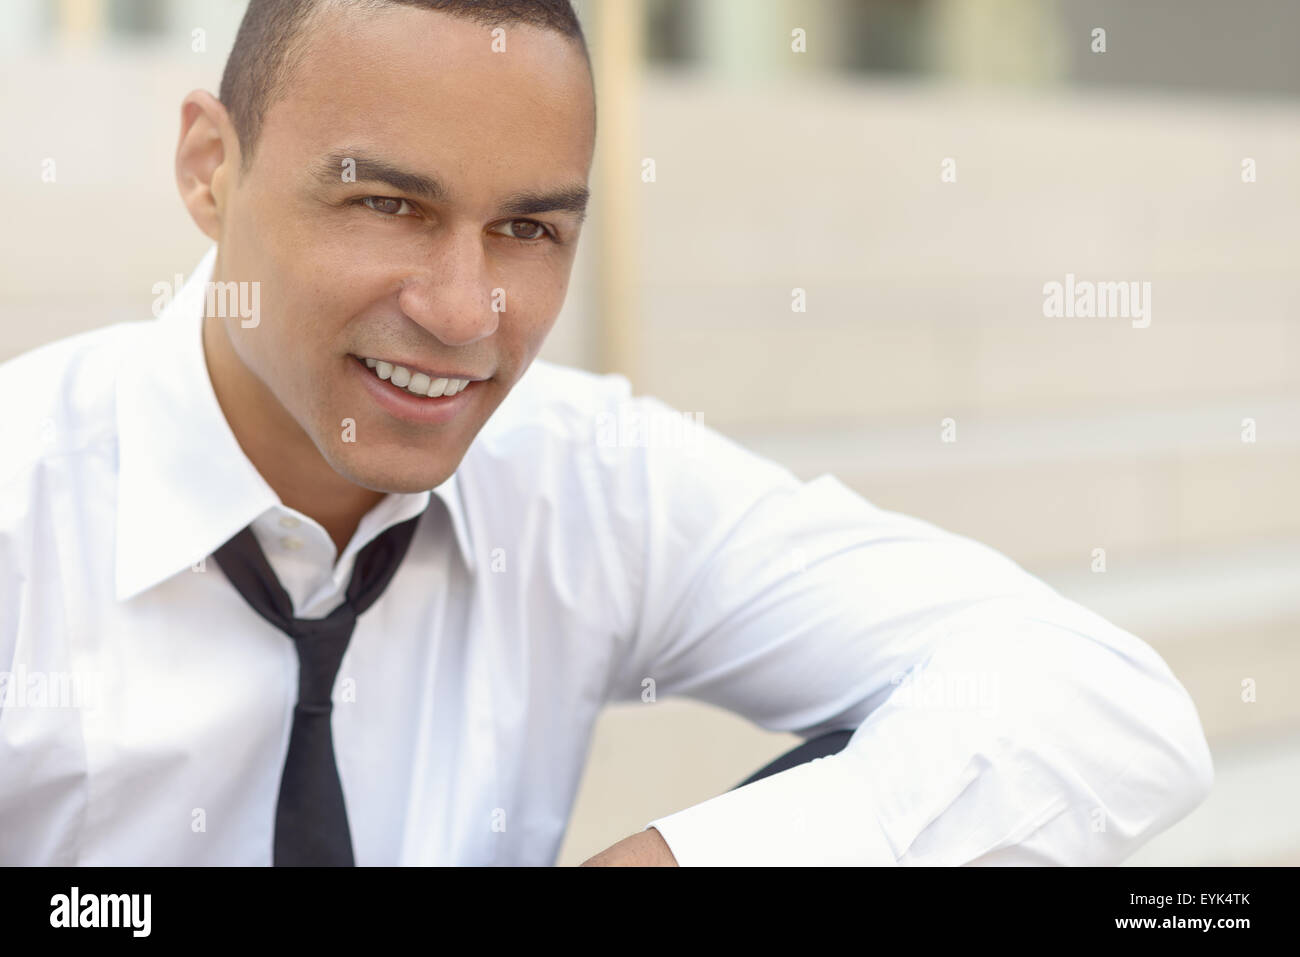 Attraente imprenditore sorridente con una fascetta allentata e il suo collare rimosse guardando al lato destro del telaio, closeup hea Foto Stock